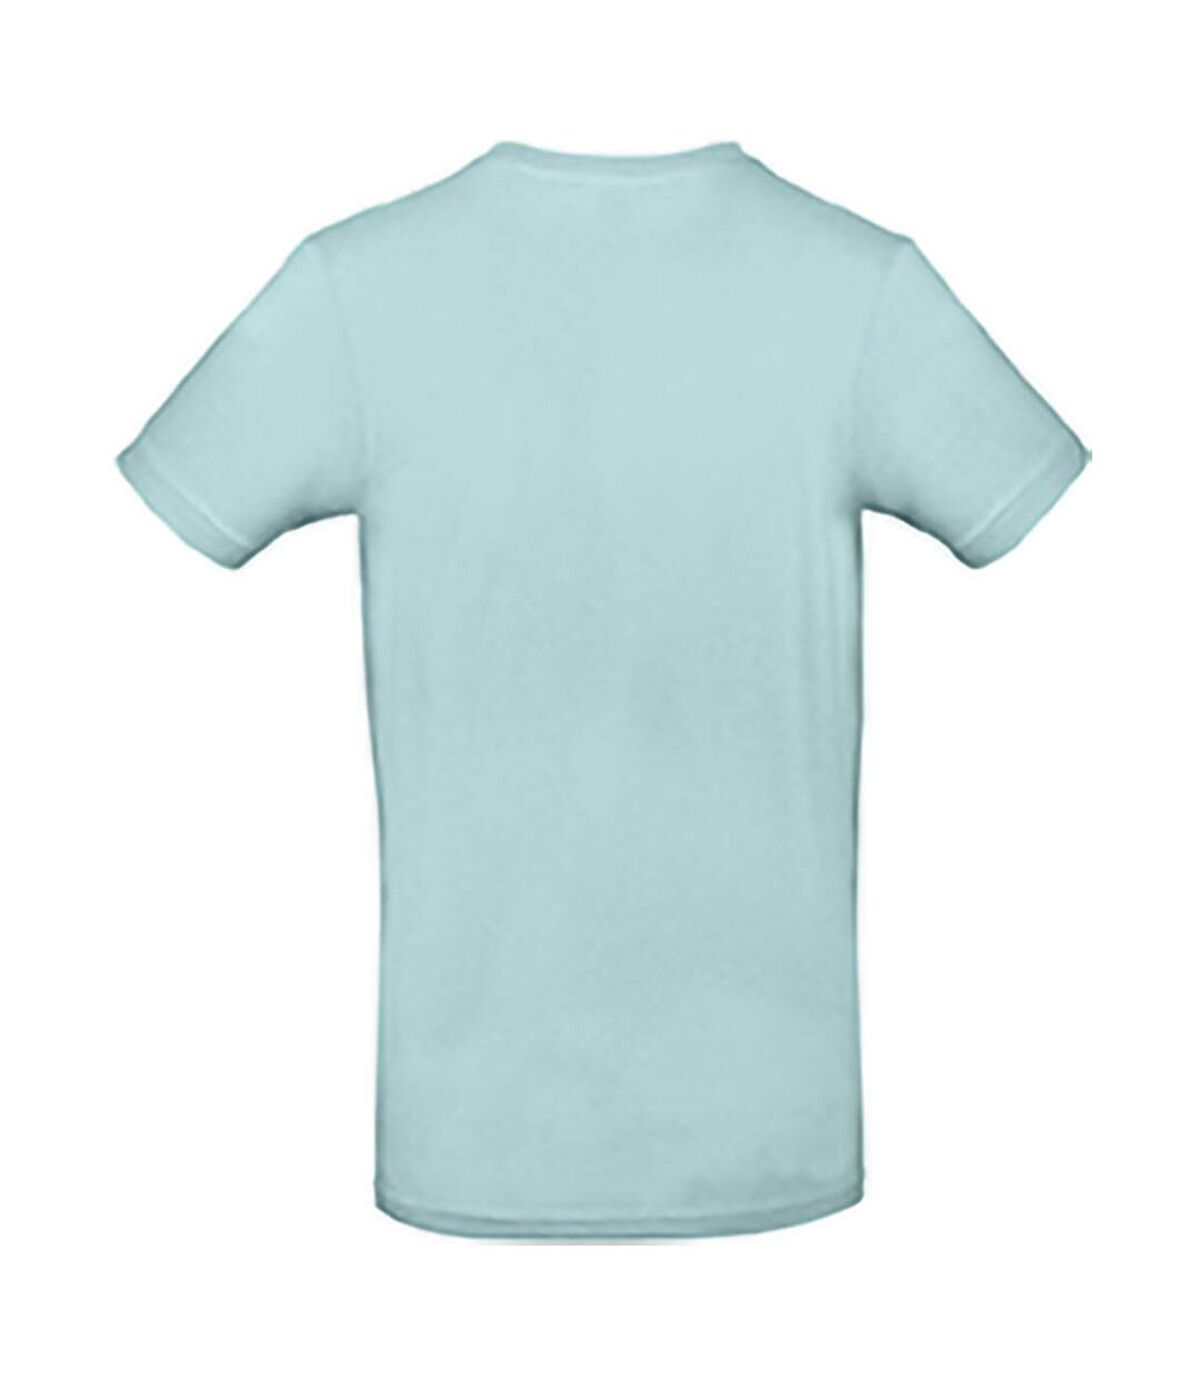 B&C - T-shirt manches courtes - Homme (Bleu clair) - UTBC3911